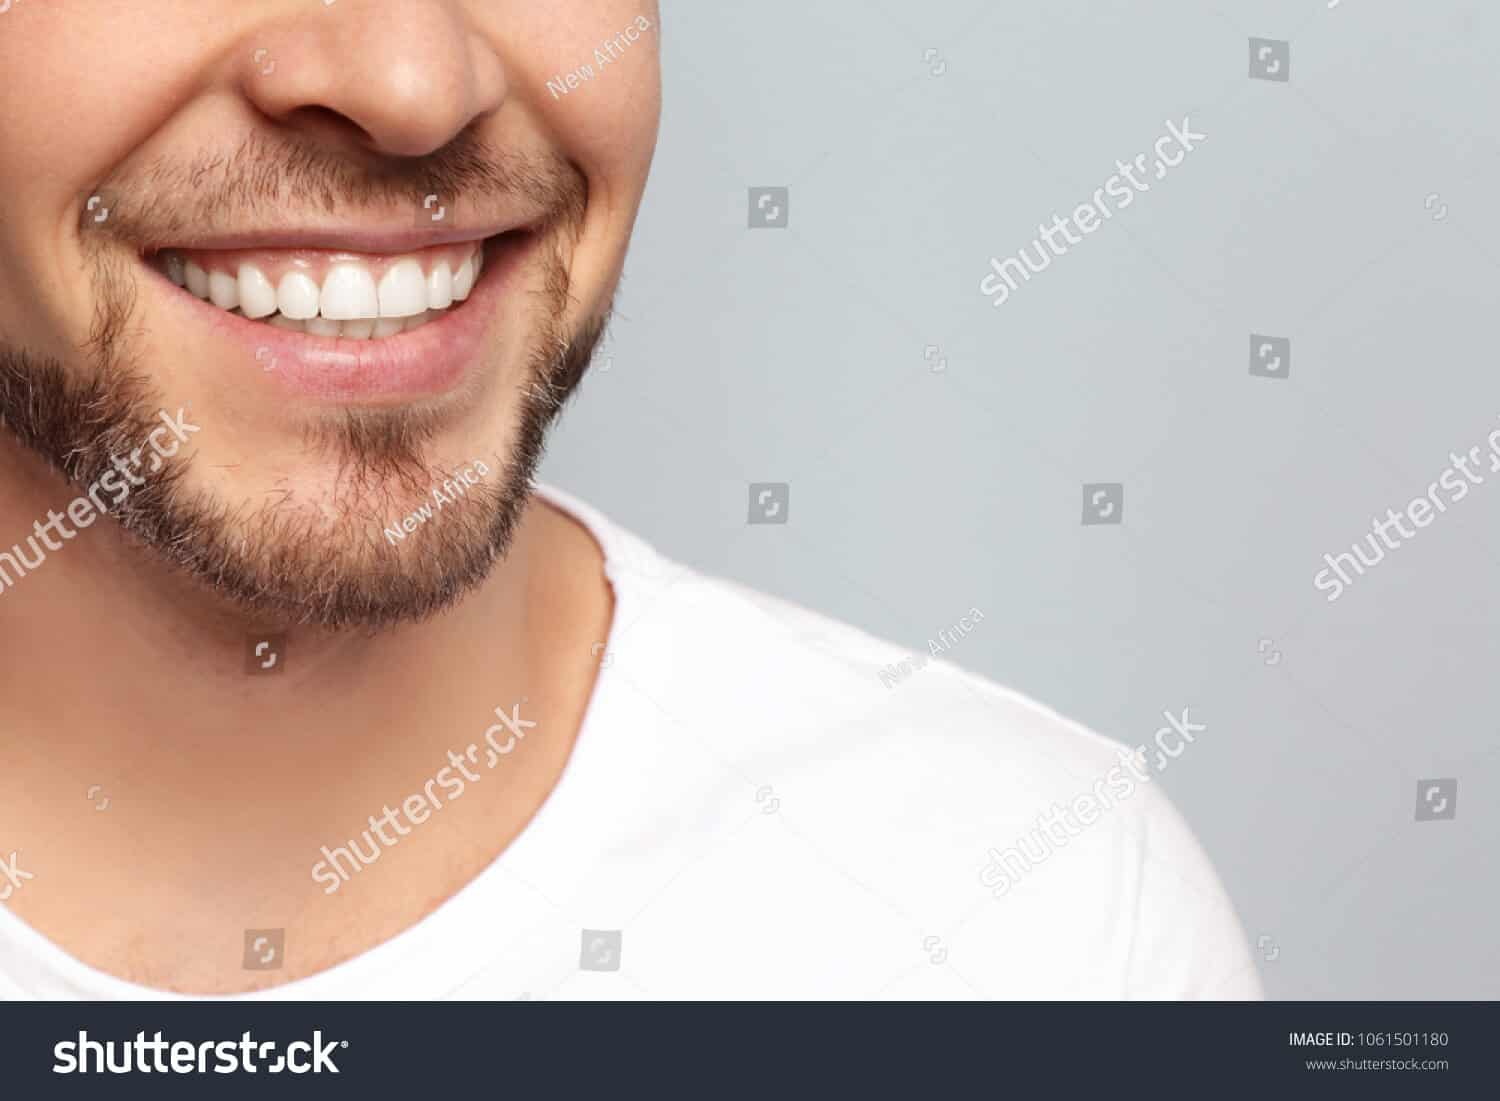 1 triệu 700 ngàn hình ảnh răng chất lượng cao trên Shutterstock